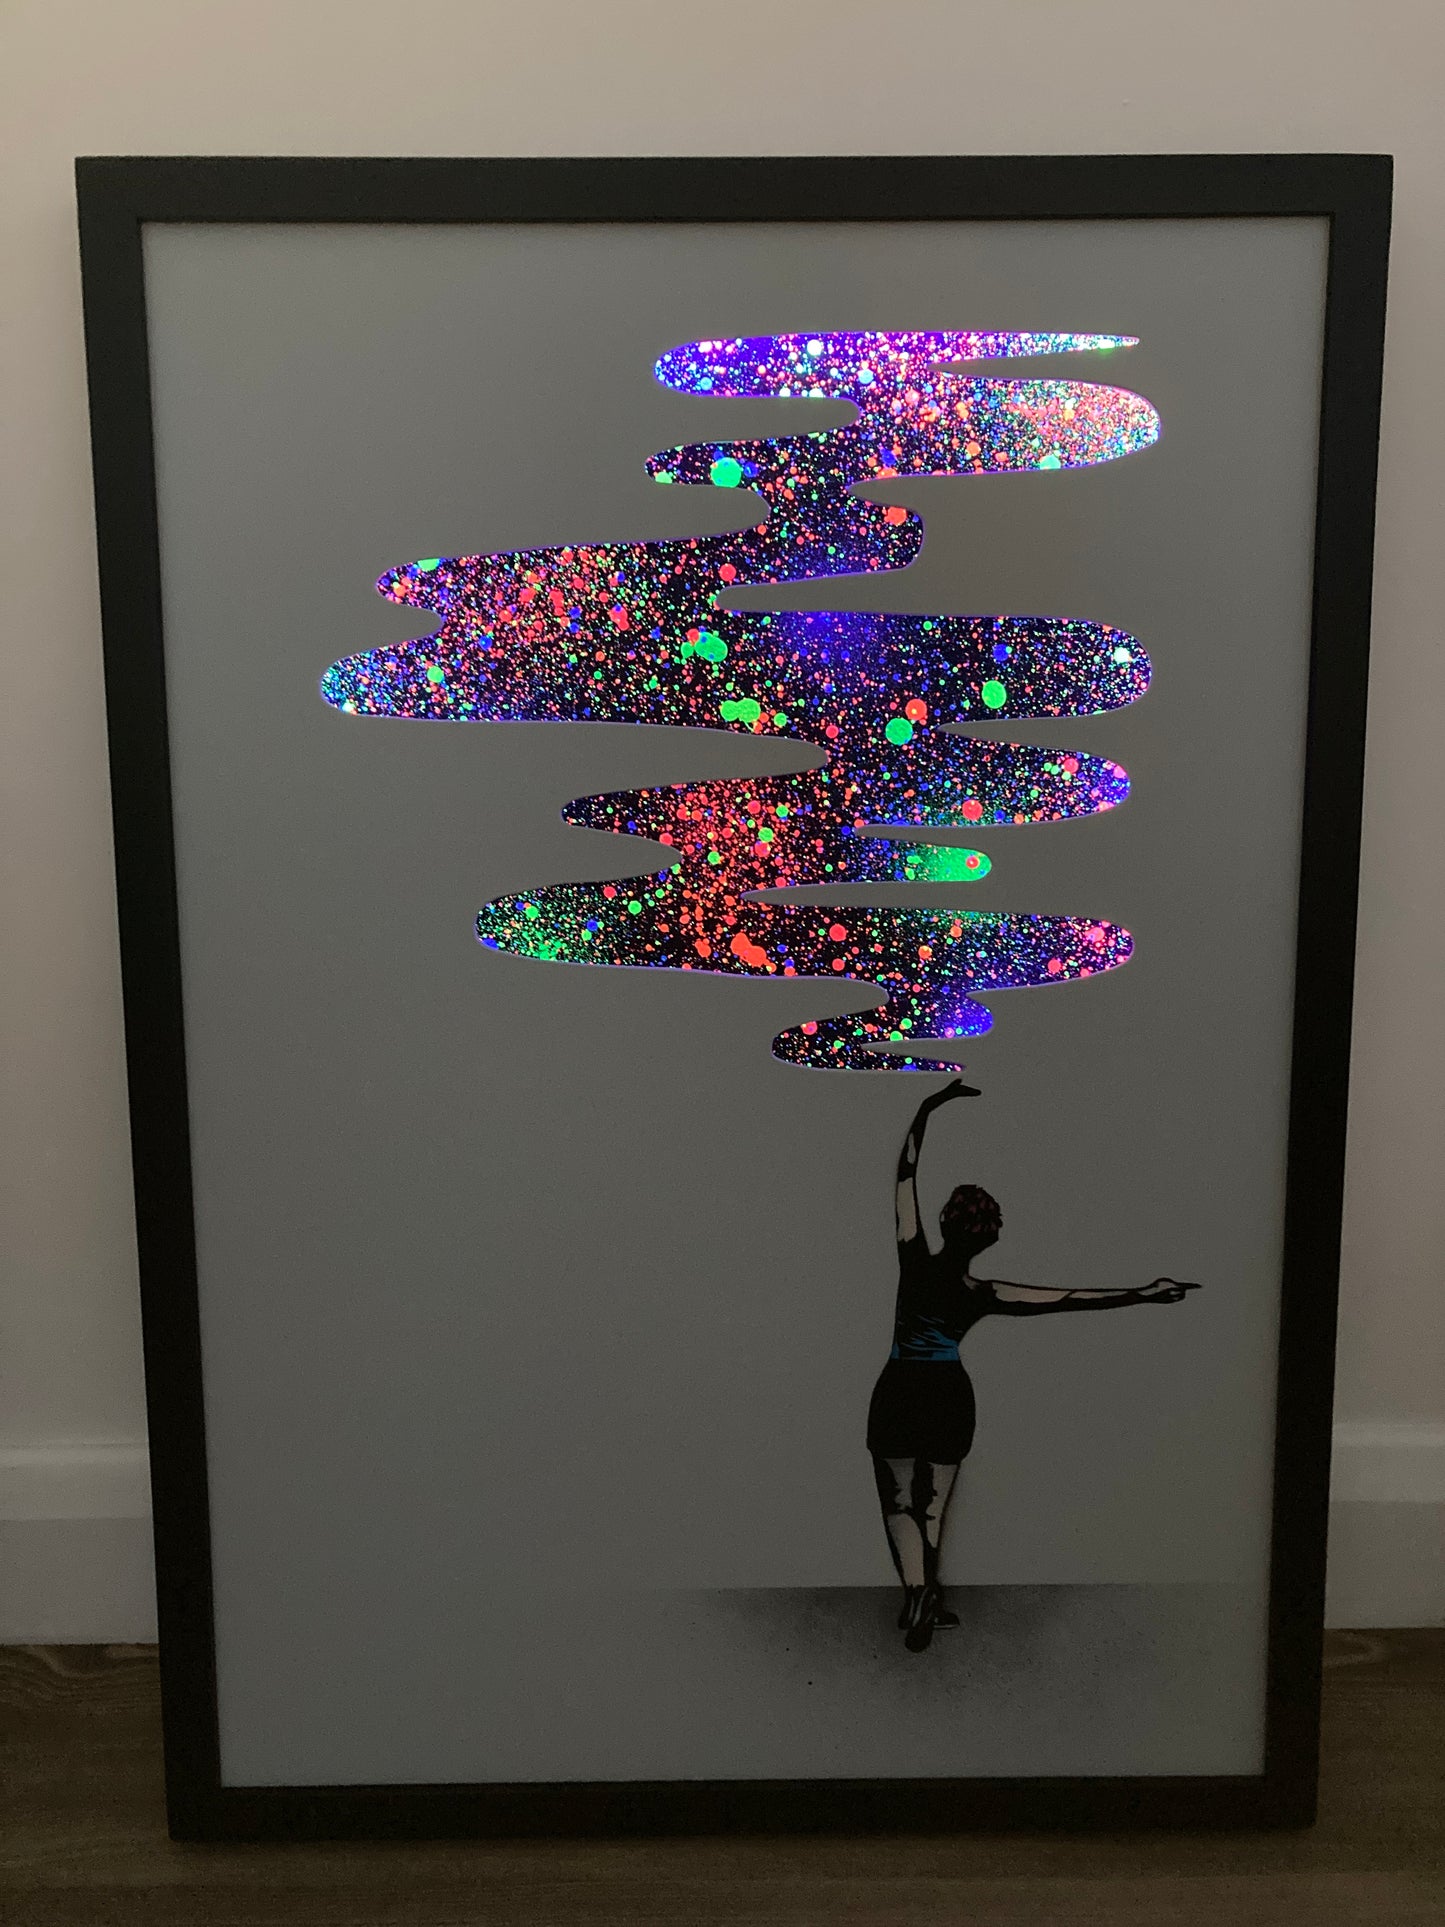 Give Me More - Framed Light up Wood Panel